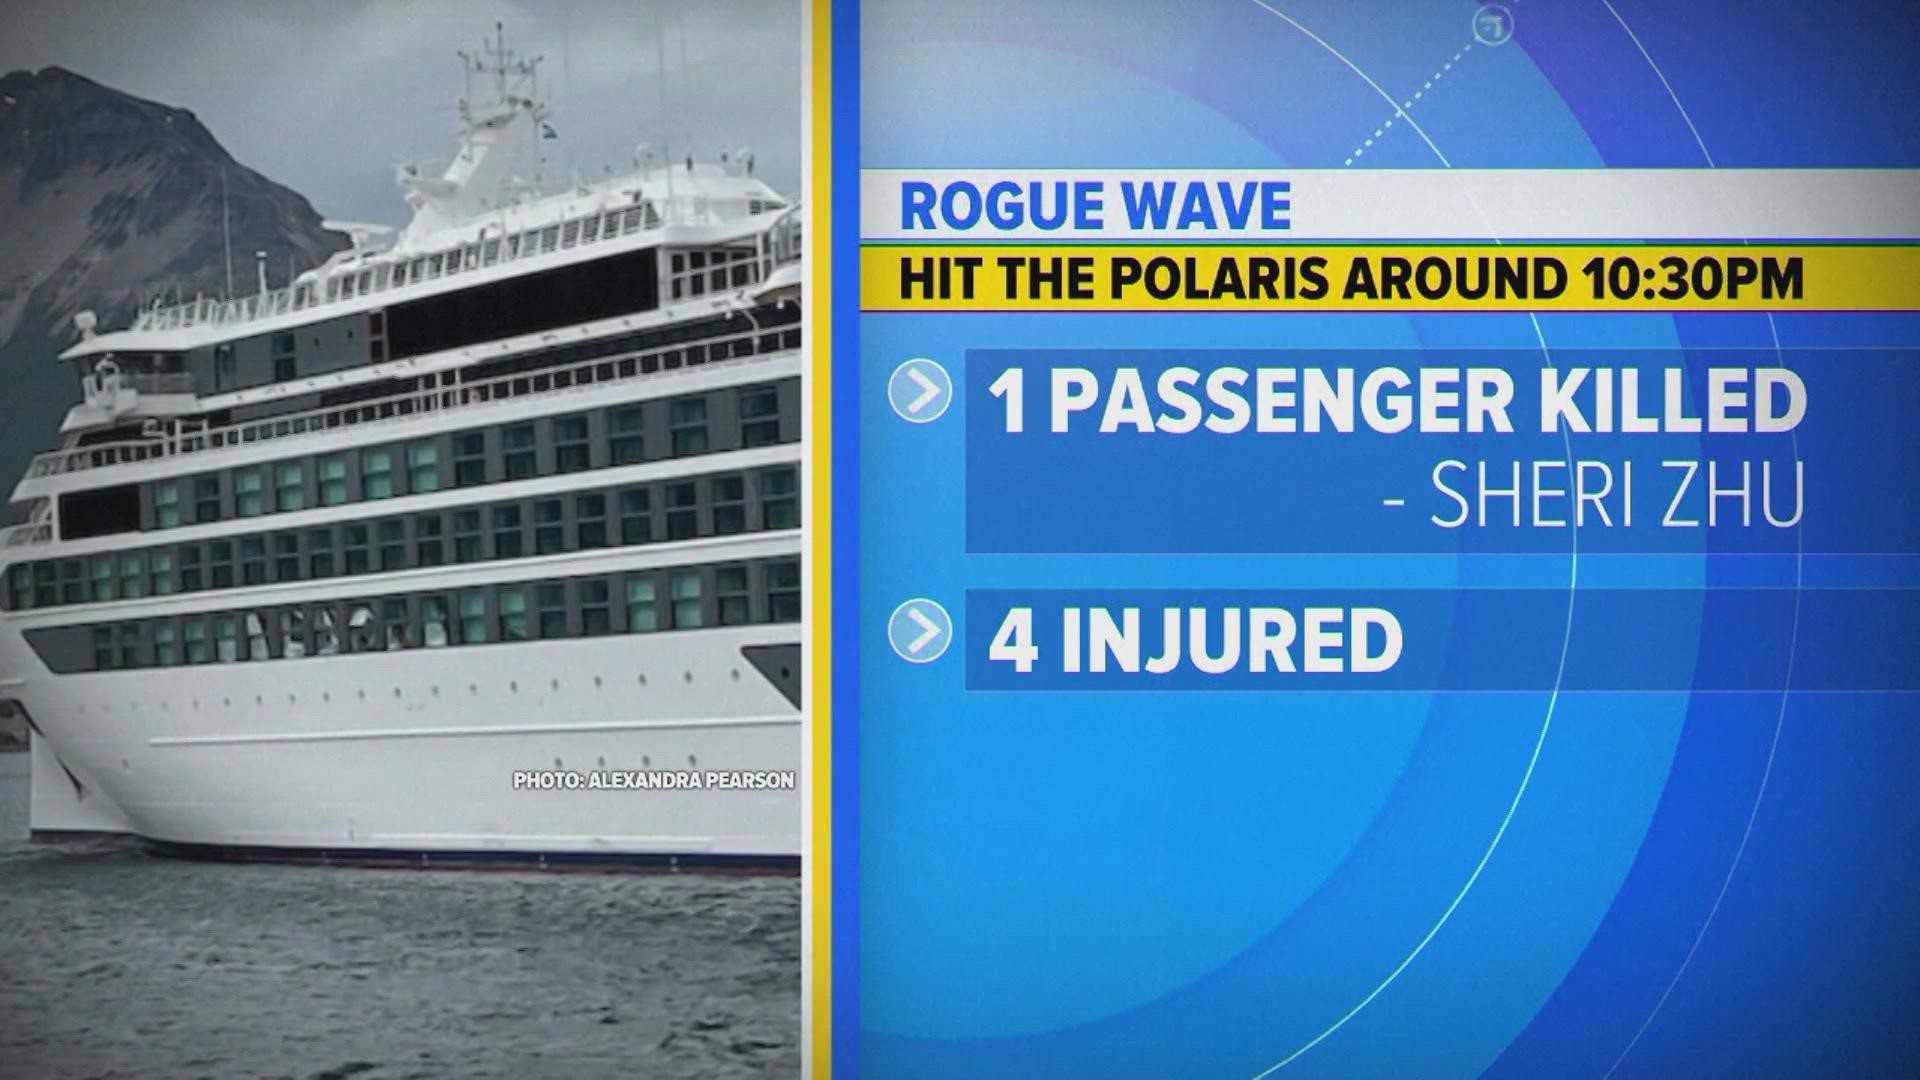 passenger killed on viking cruise